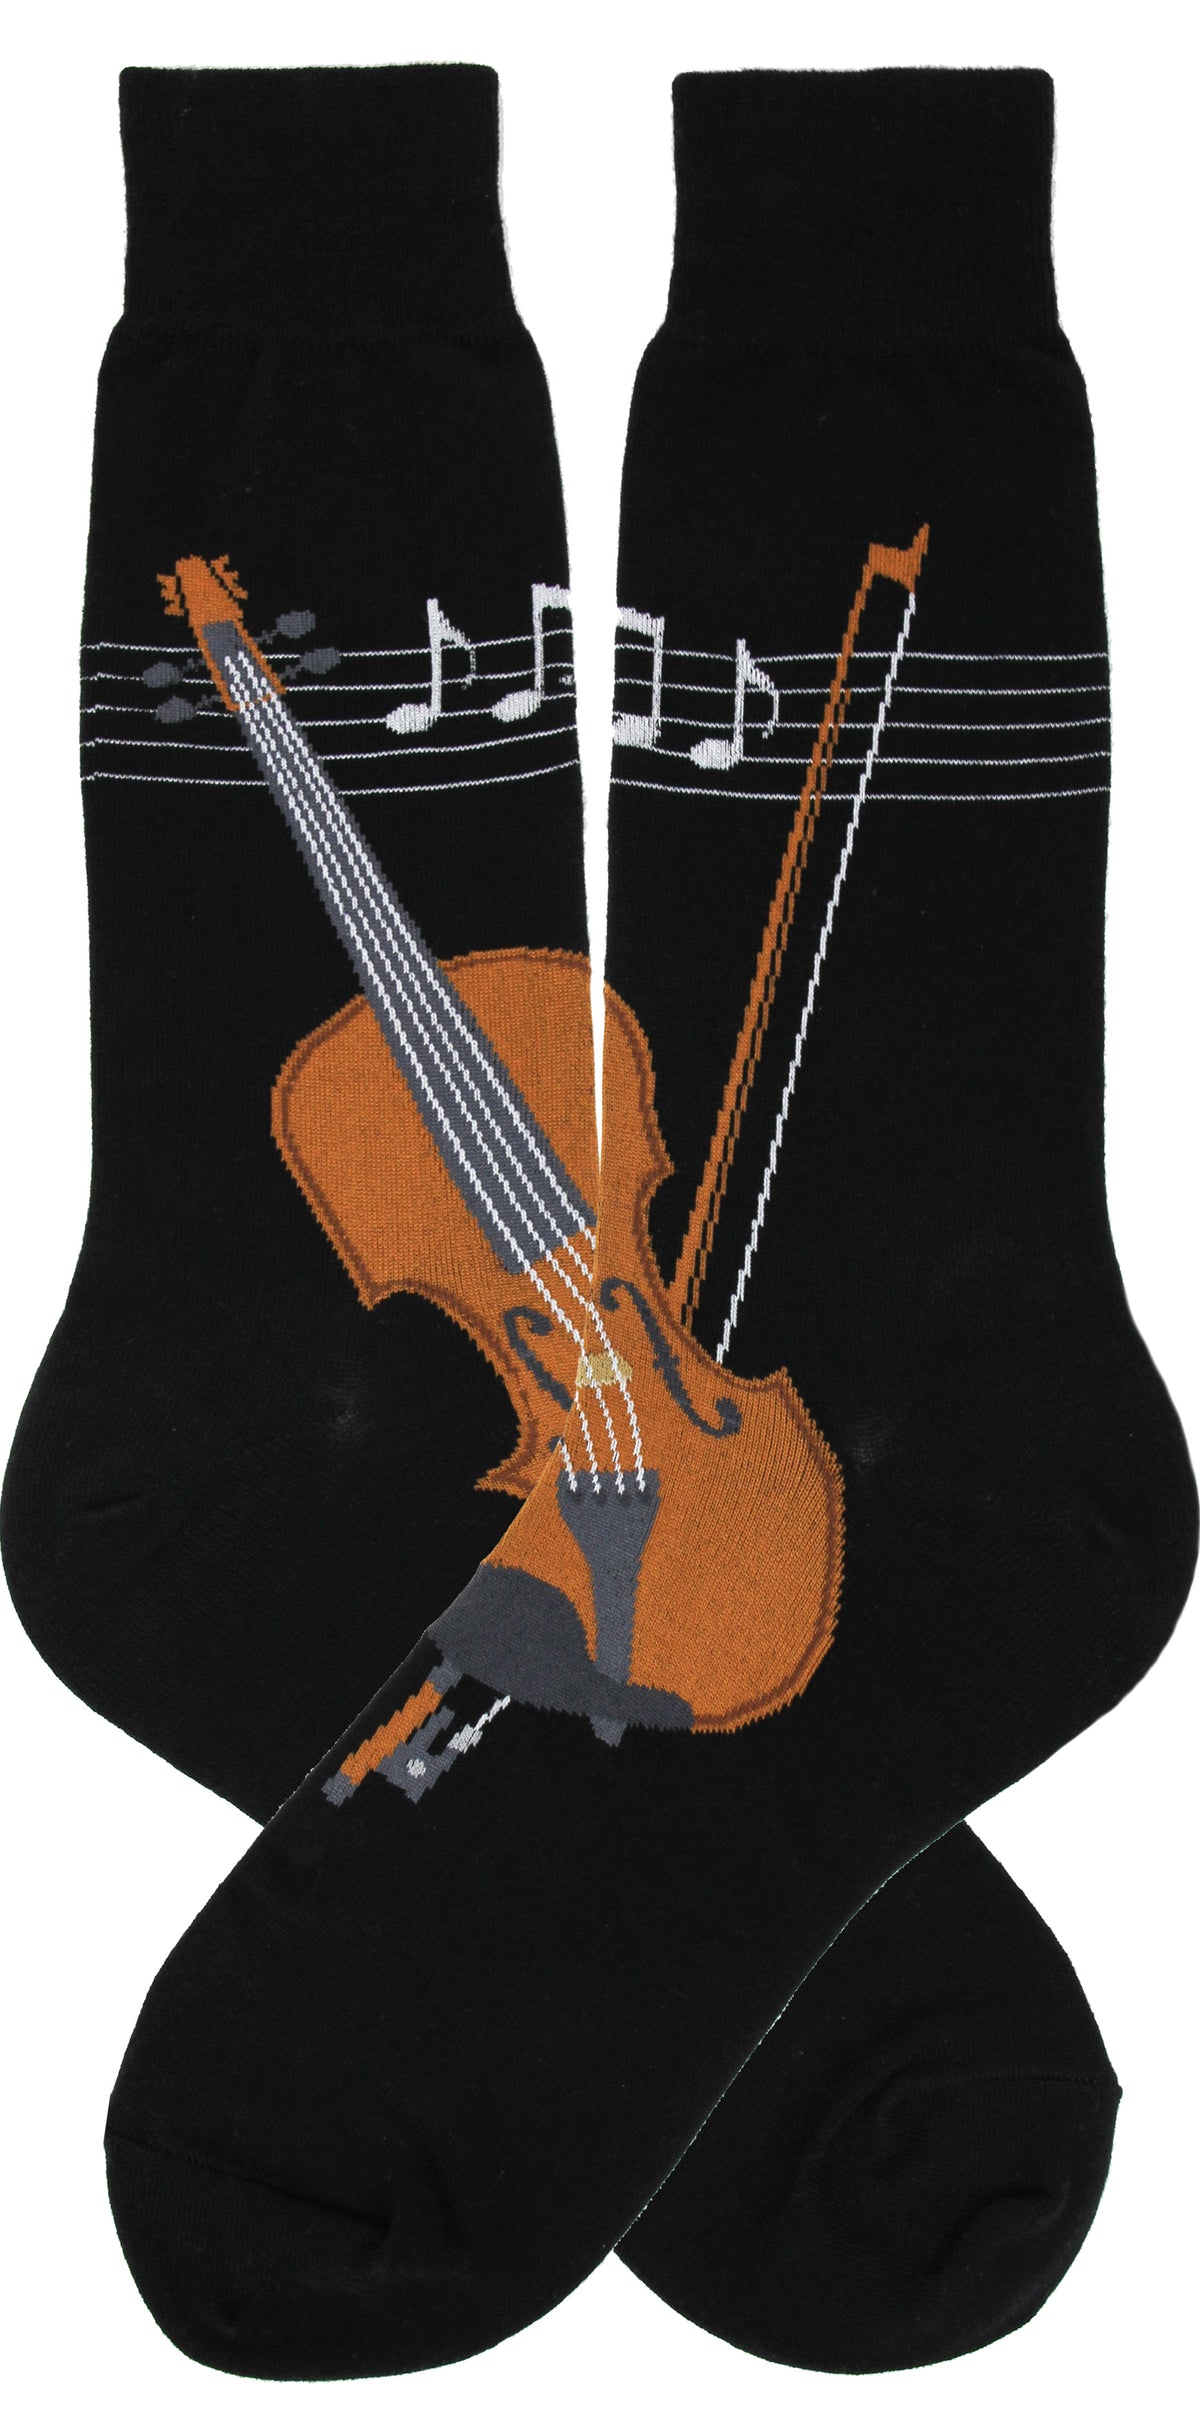 Socks: Men's Violin Design Crew (Strings)